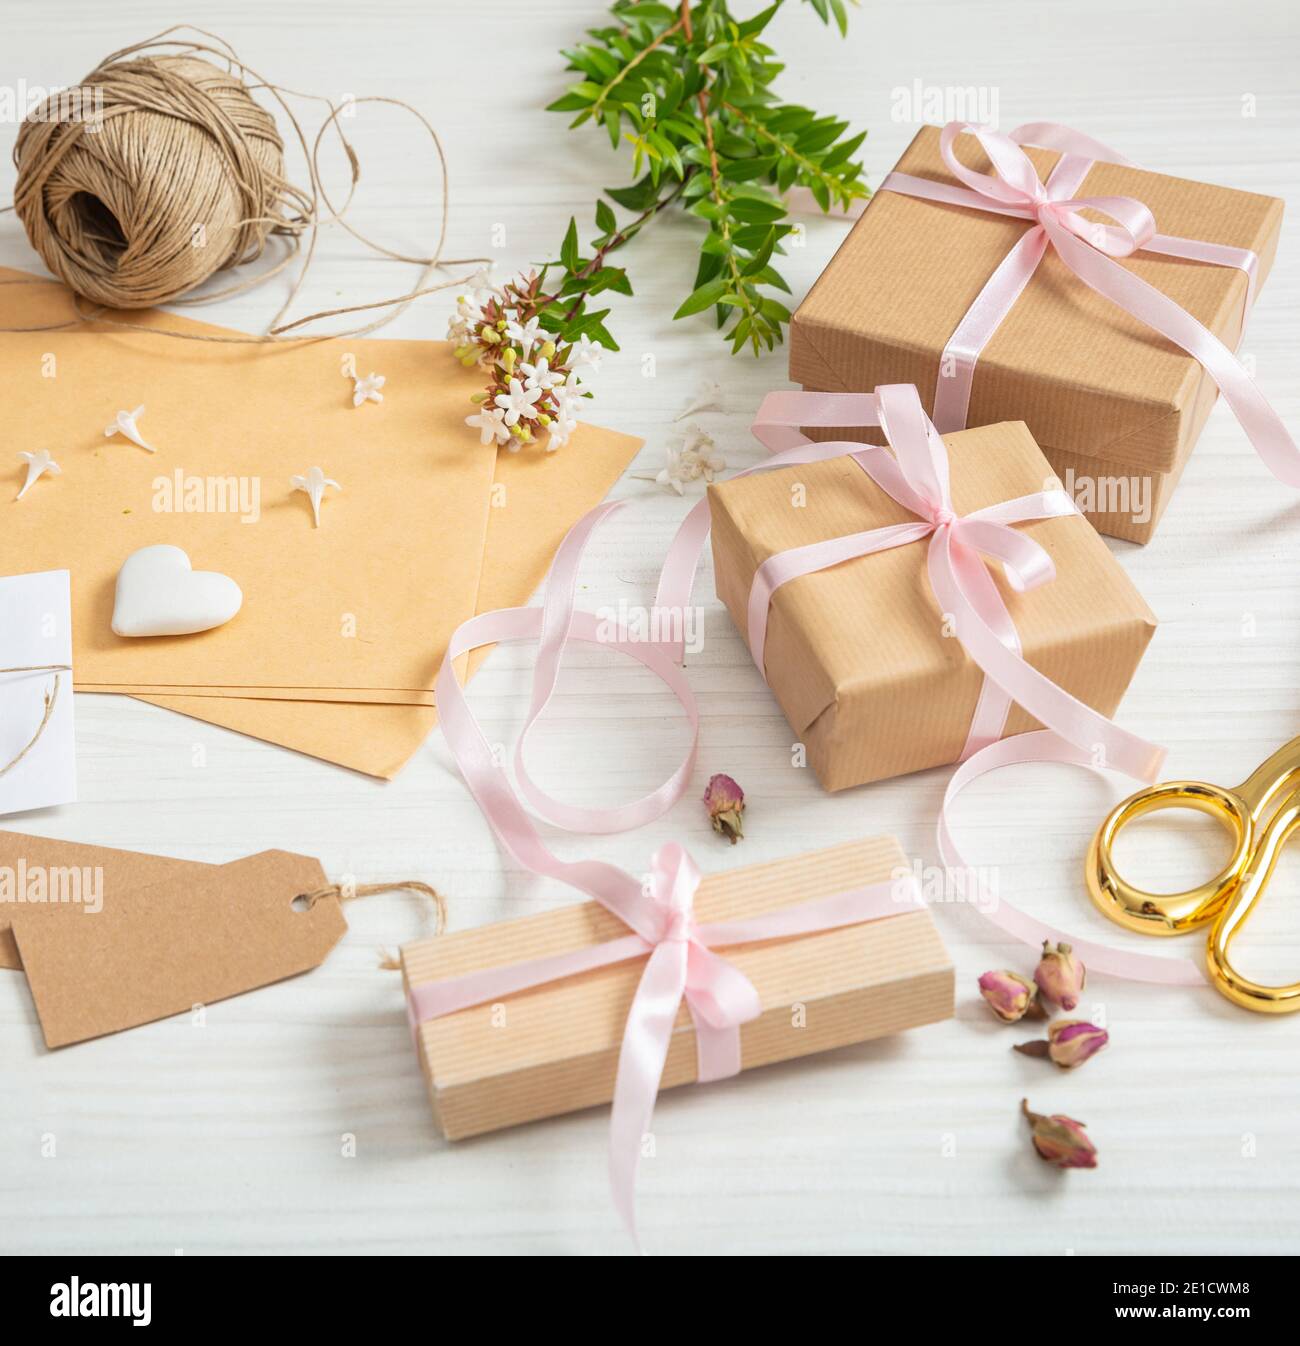 Le scatole di regalo e gli inviti sono appoggiati su un piano di legno  bianco. Vista dall'alto di confezioni presenti fatte a mano, etichette  marroni vuote, carta da imballaggio per kraft, ri